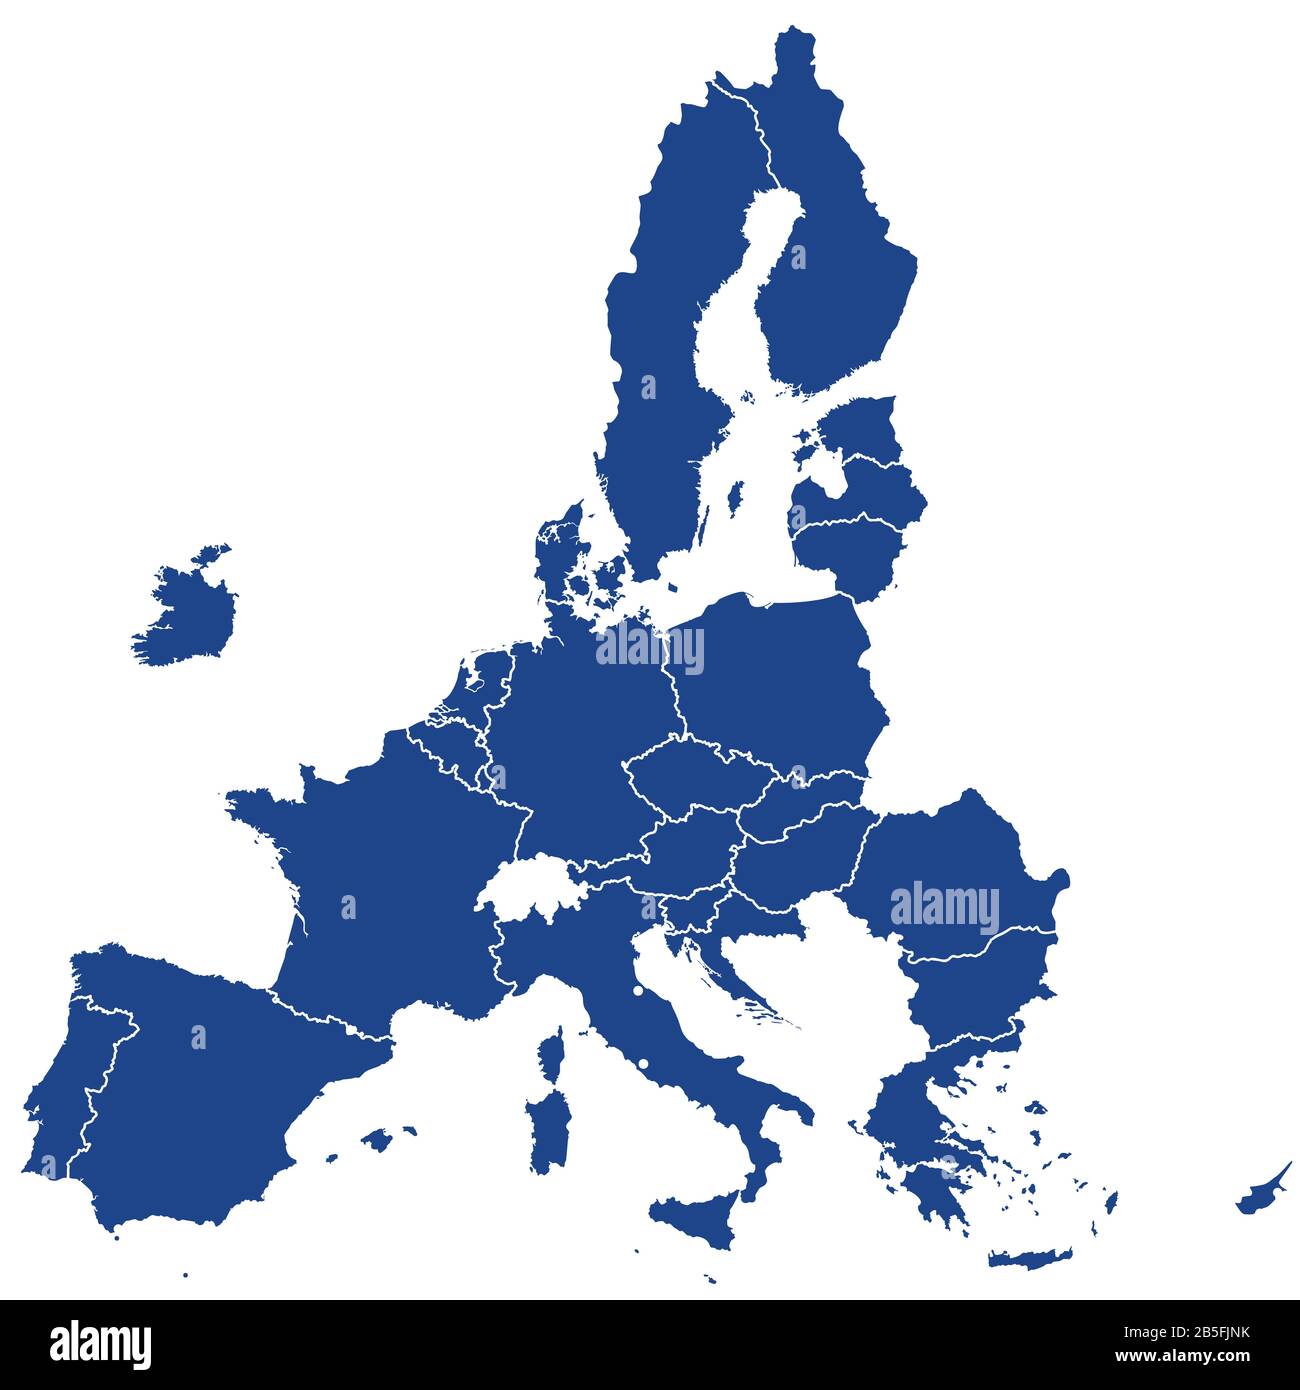 stati membri dell’Unione europea dopo la Brexit, silhouette blu. 27 stati membri dell'UE dopo la partenza del Regno Unito nel 2020. Foto Stock